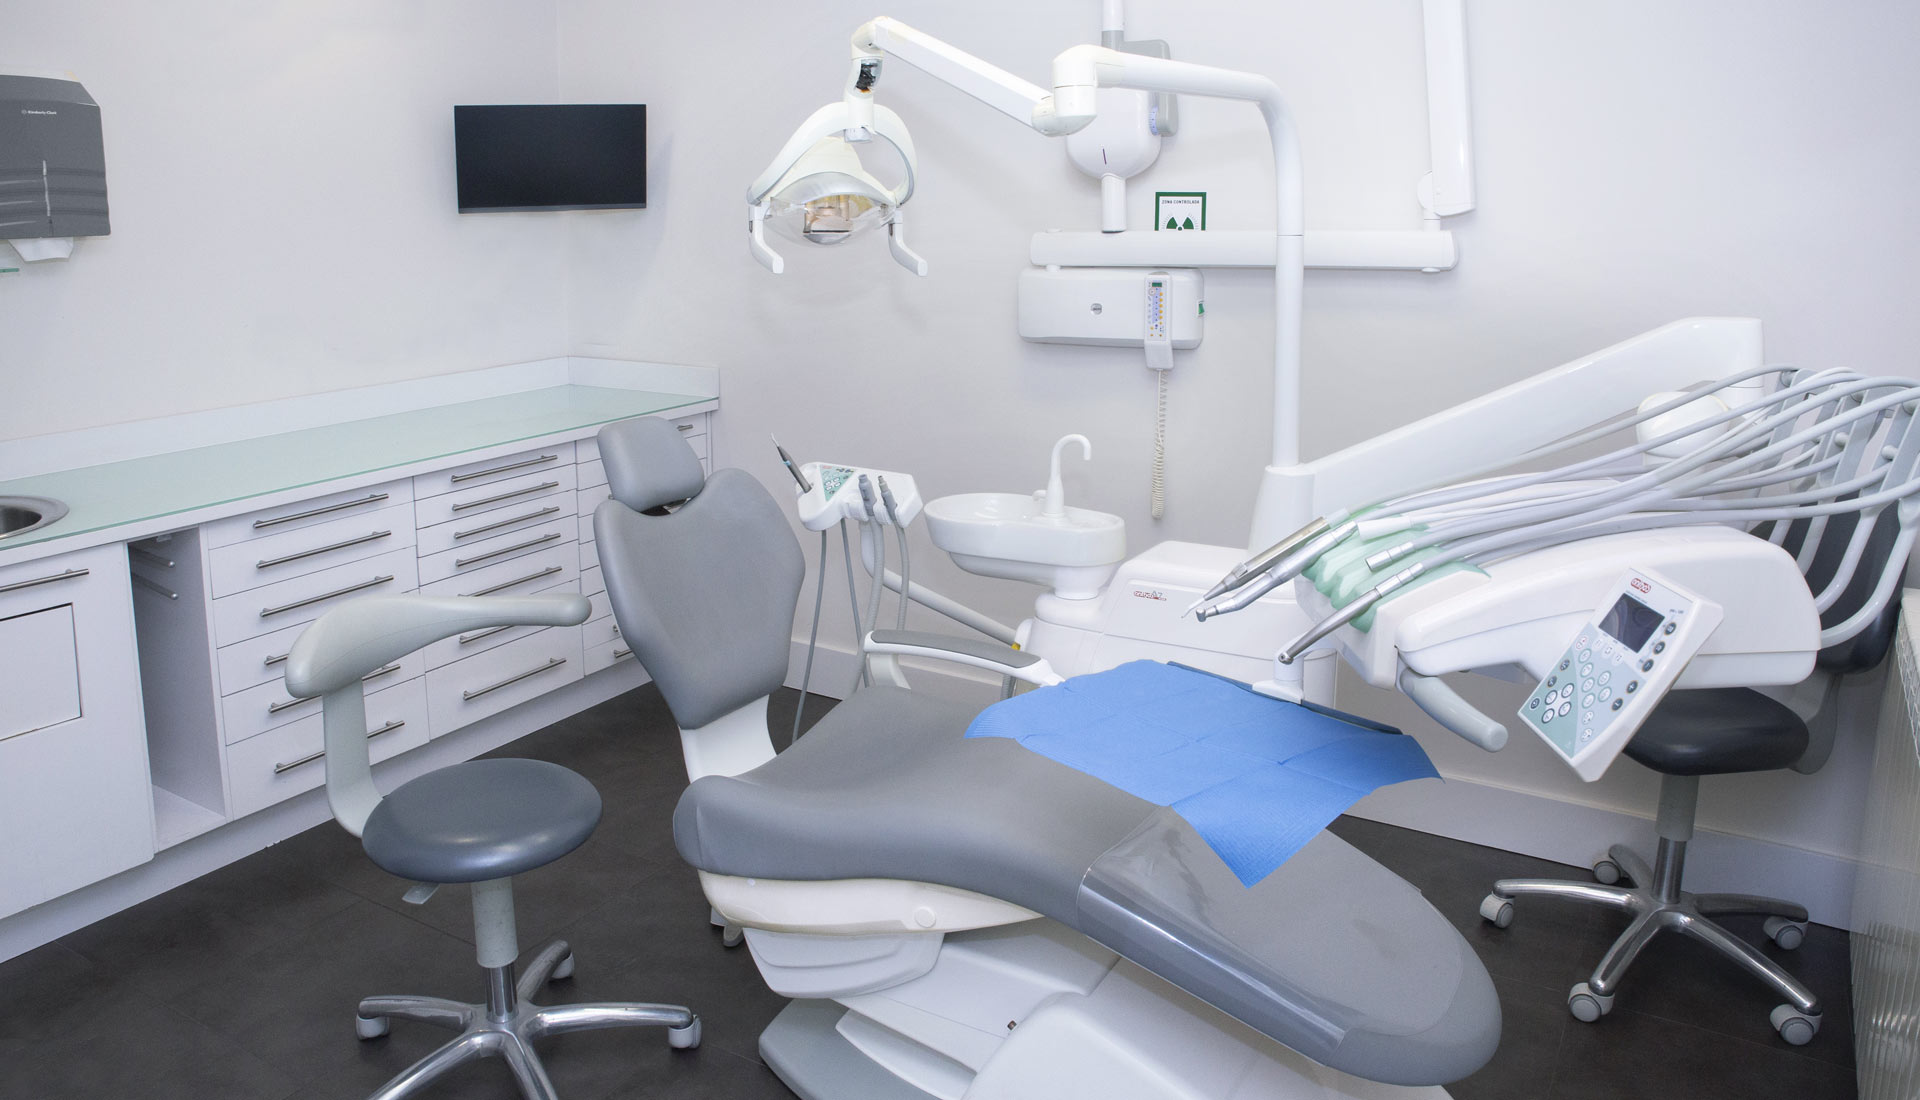 Artdental-Clinica-Dental-Gabinete-Arguedas-2021_33A2431